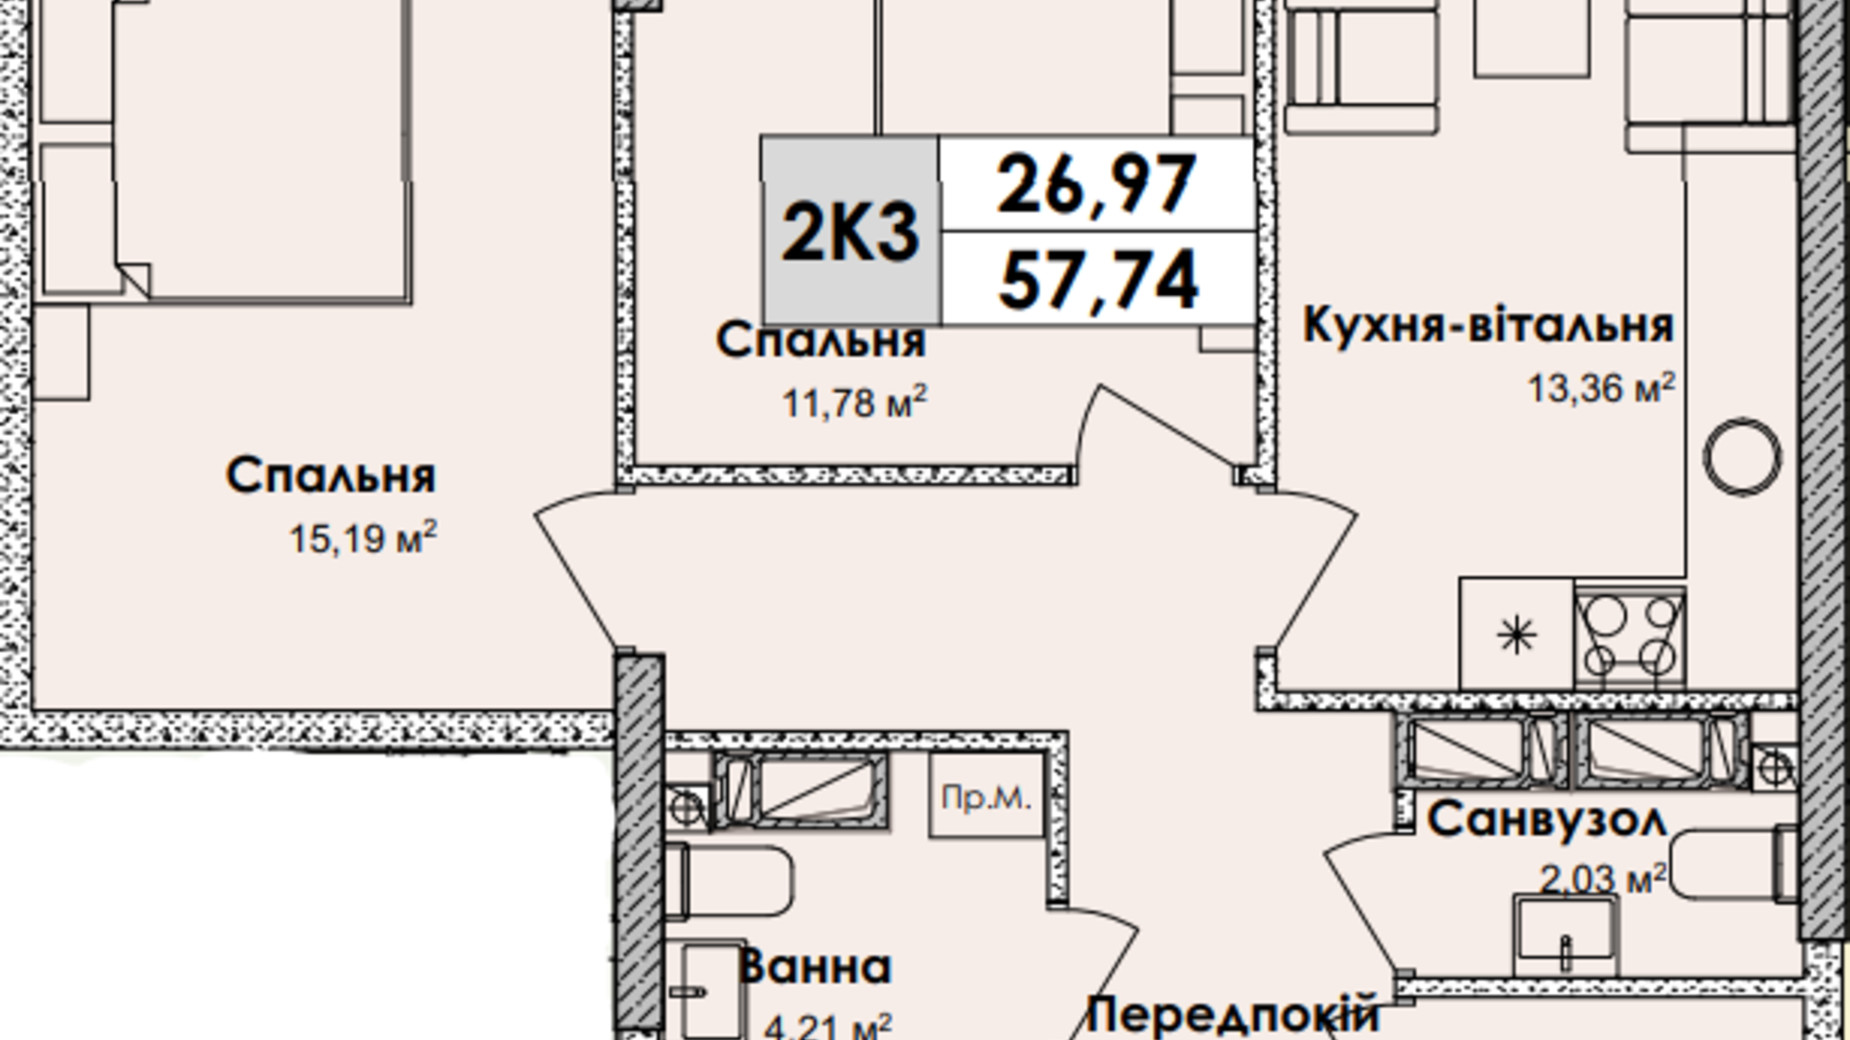 Планировка 2-комнатной квартиры в ЖК Olympiс Park 57.74 м², фото 629139